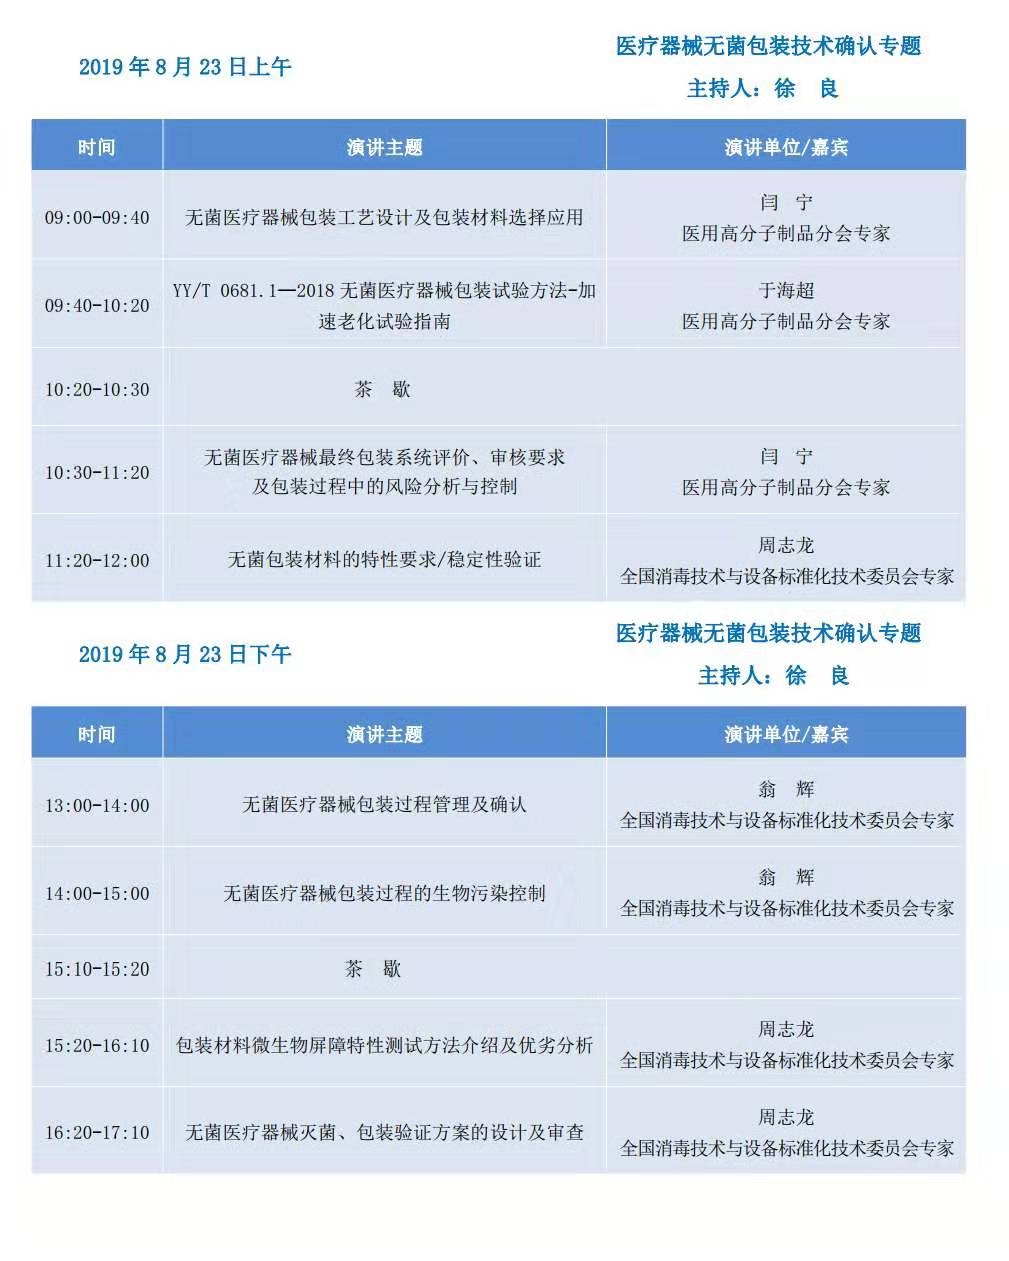 2019年第2期医疗器械灭菌与包装技术论坛（北京）